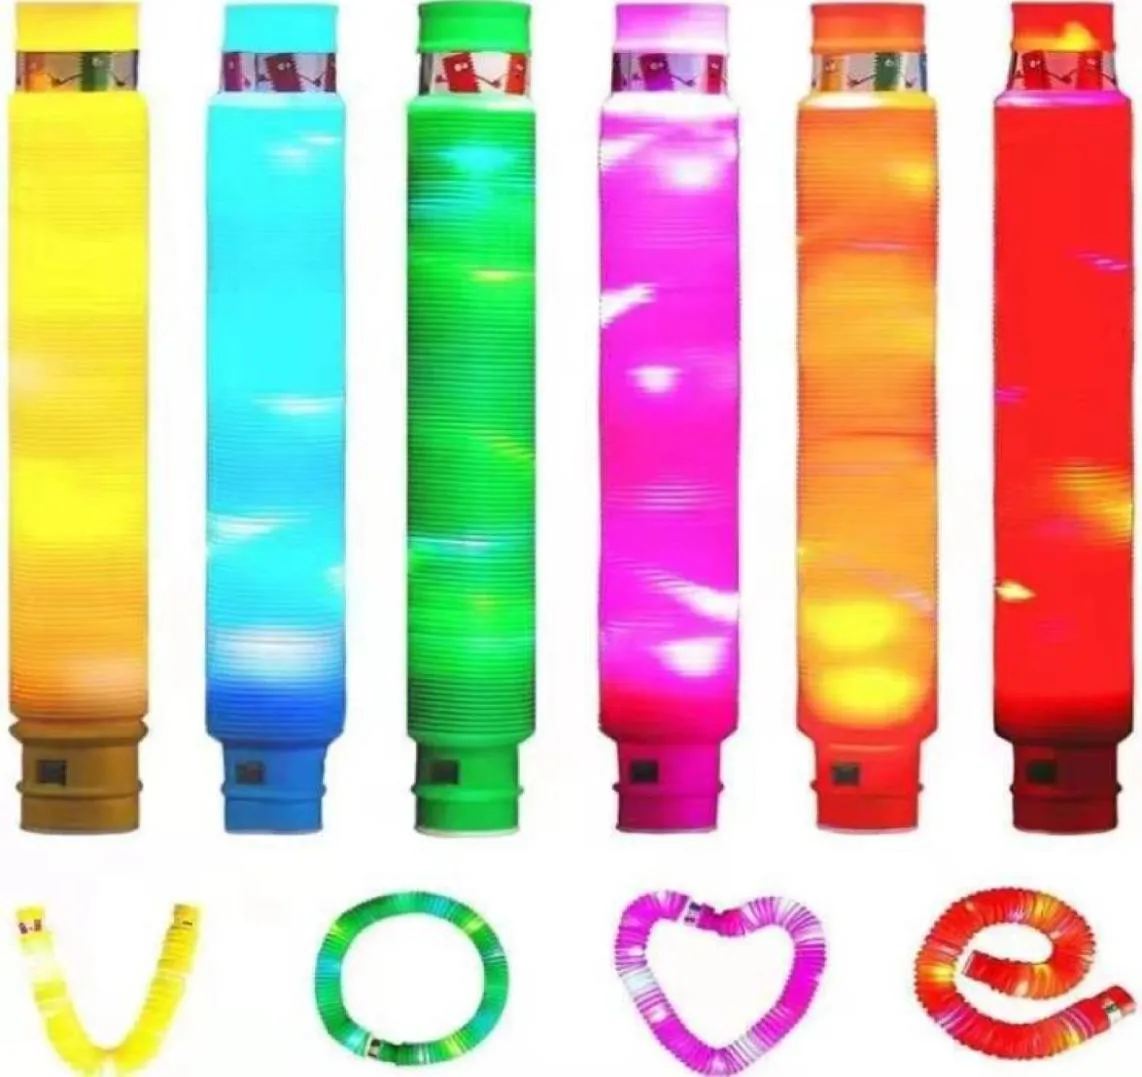 Led rave brinquedo flash light up pop tubos crianças adultos tubos de inquietação brilho sensorial aprendizagem adereços festa aniversário diy decorações2955556